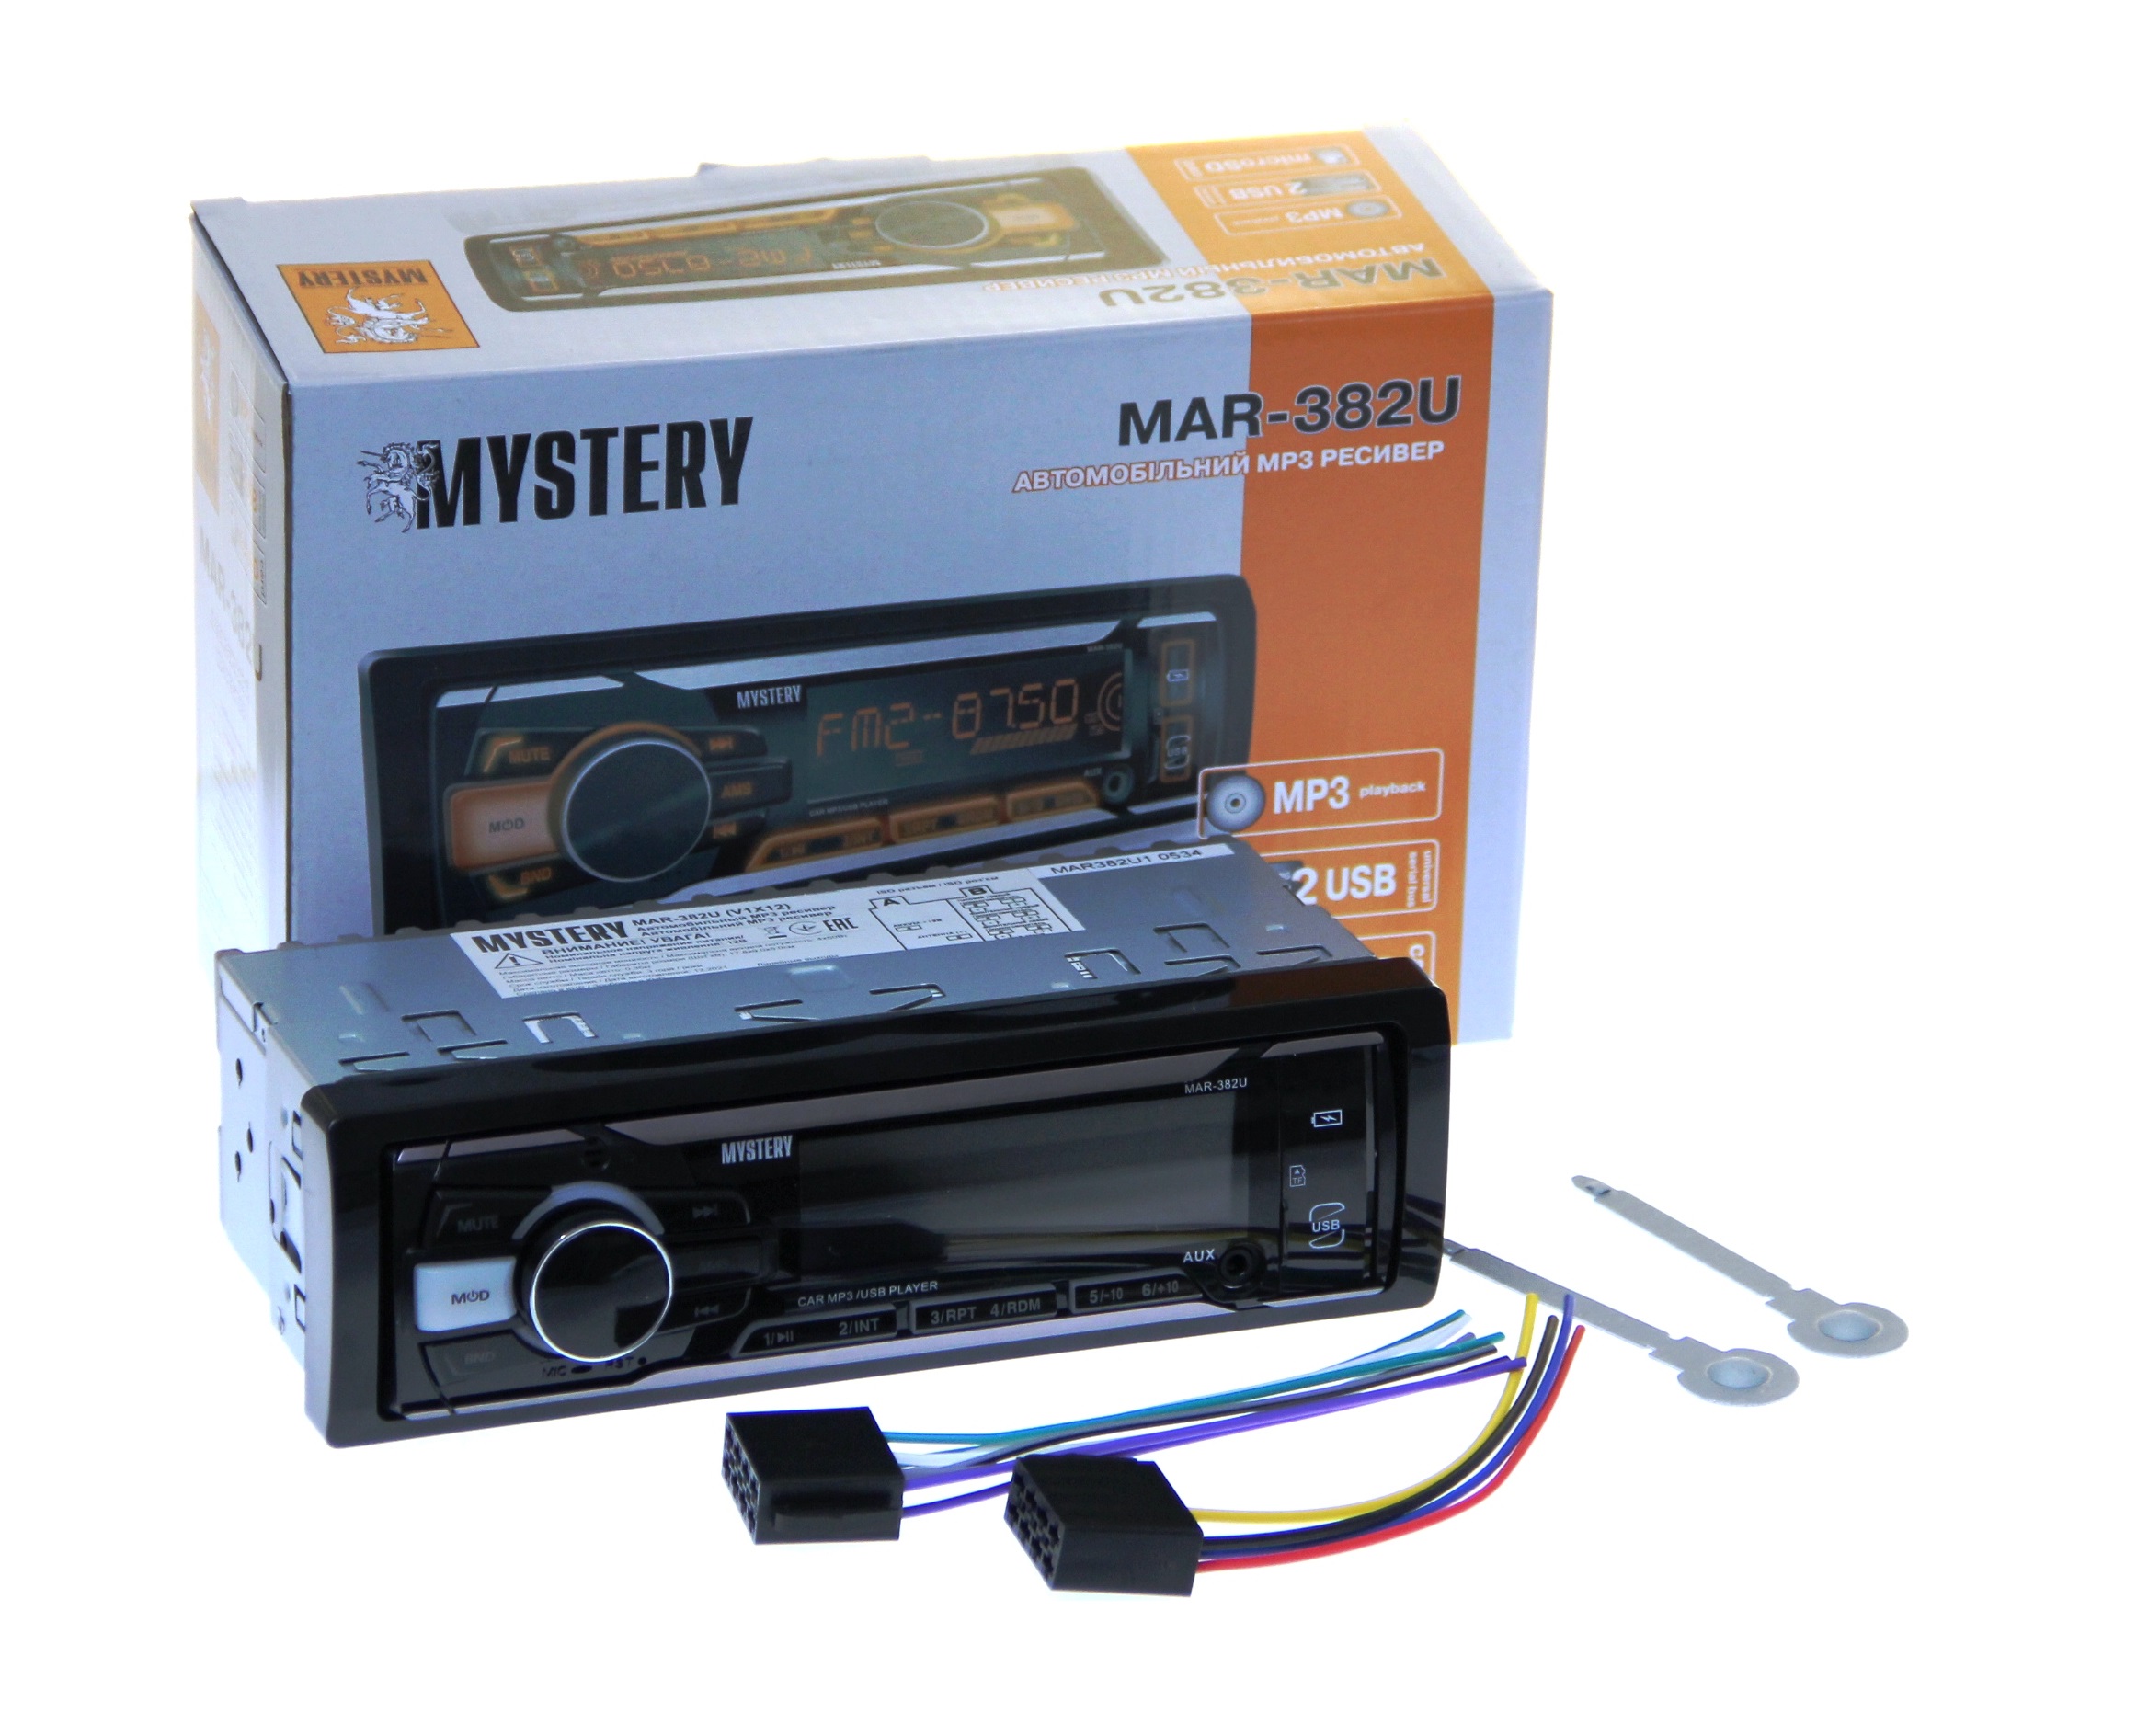 Car Receiver Mystery MAR-382U